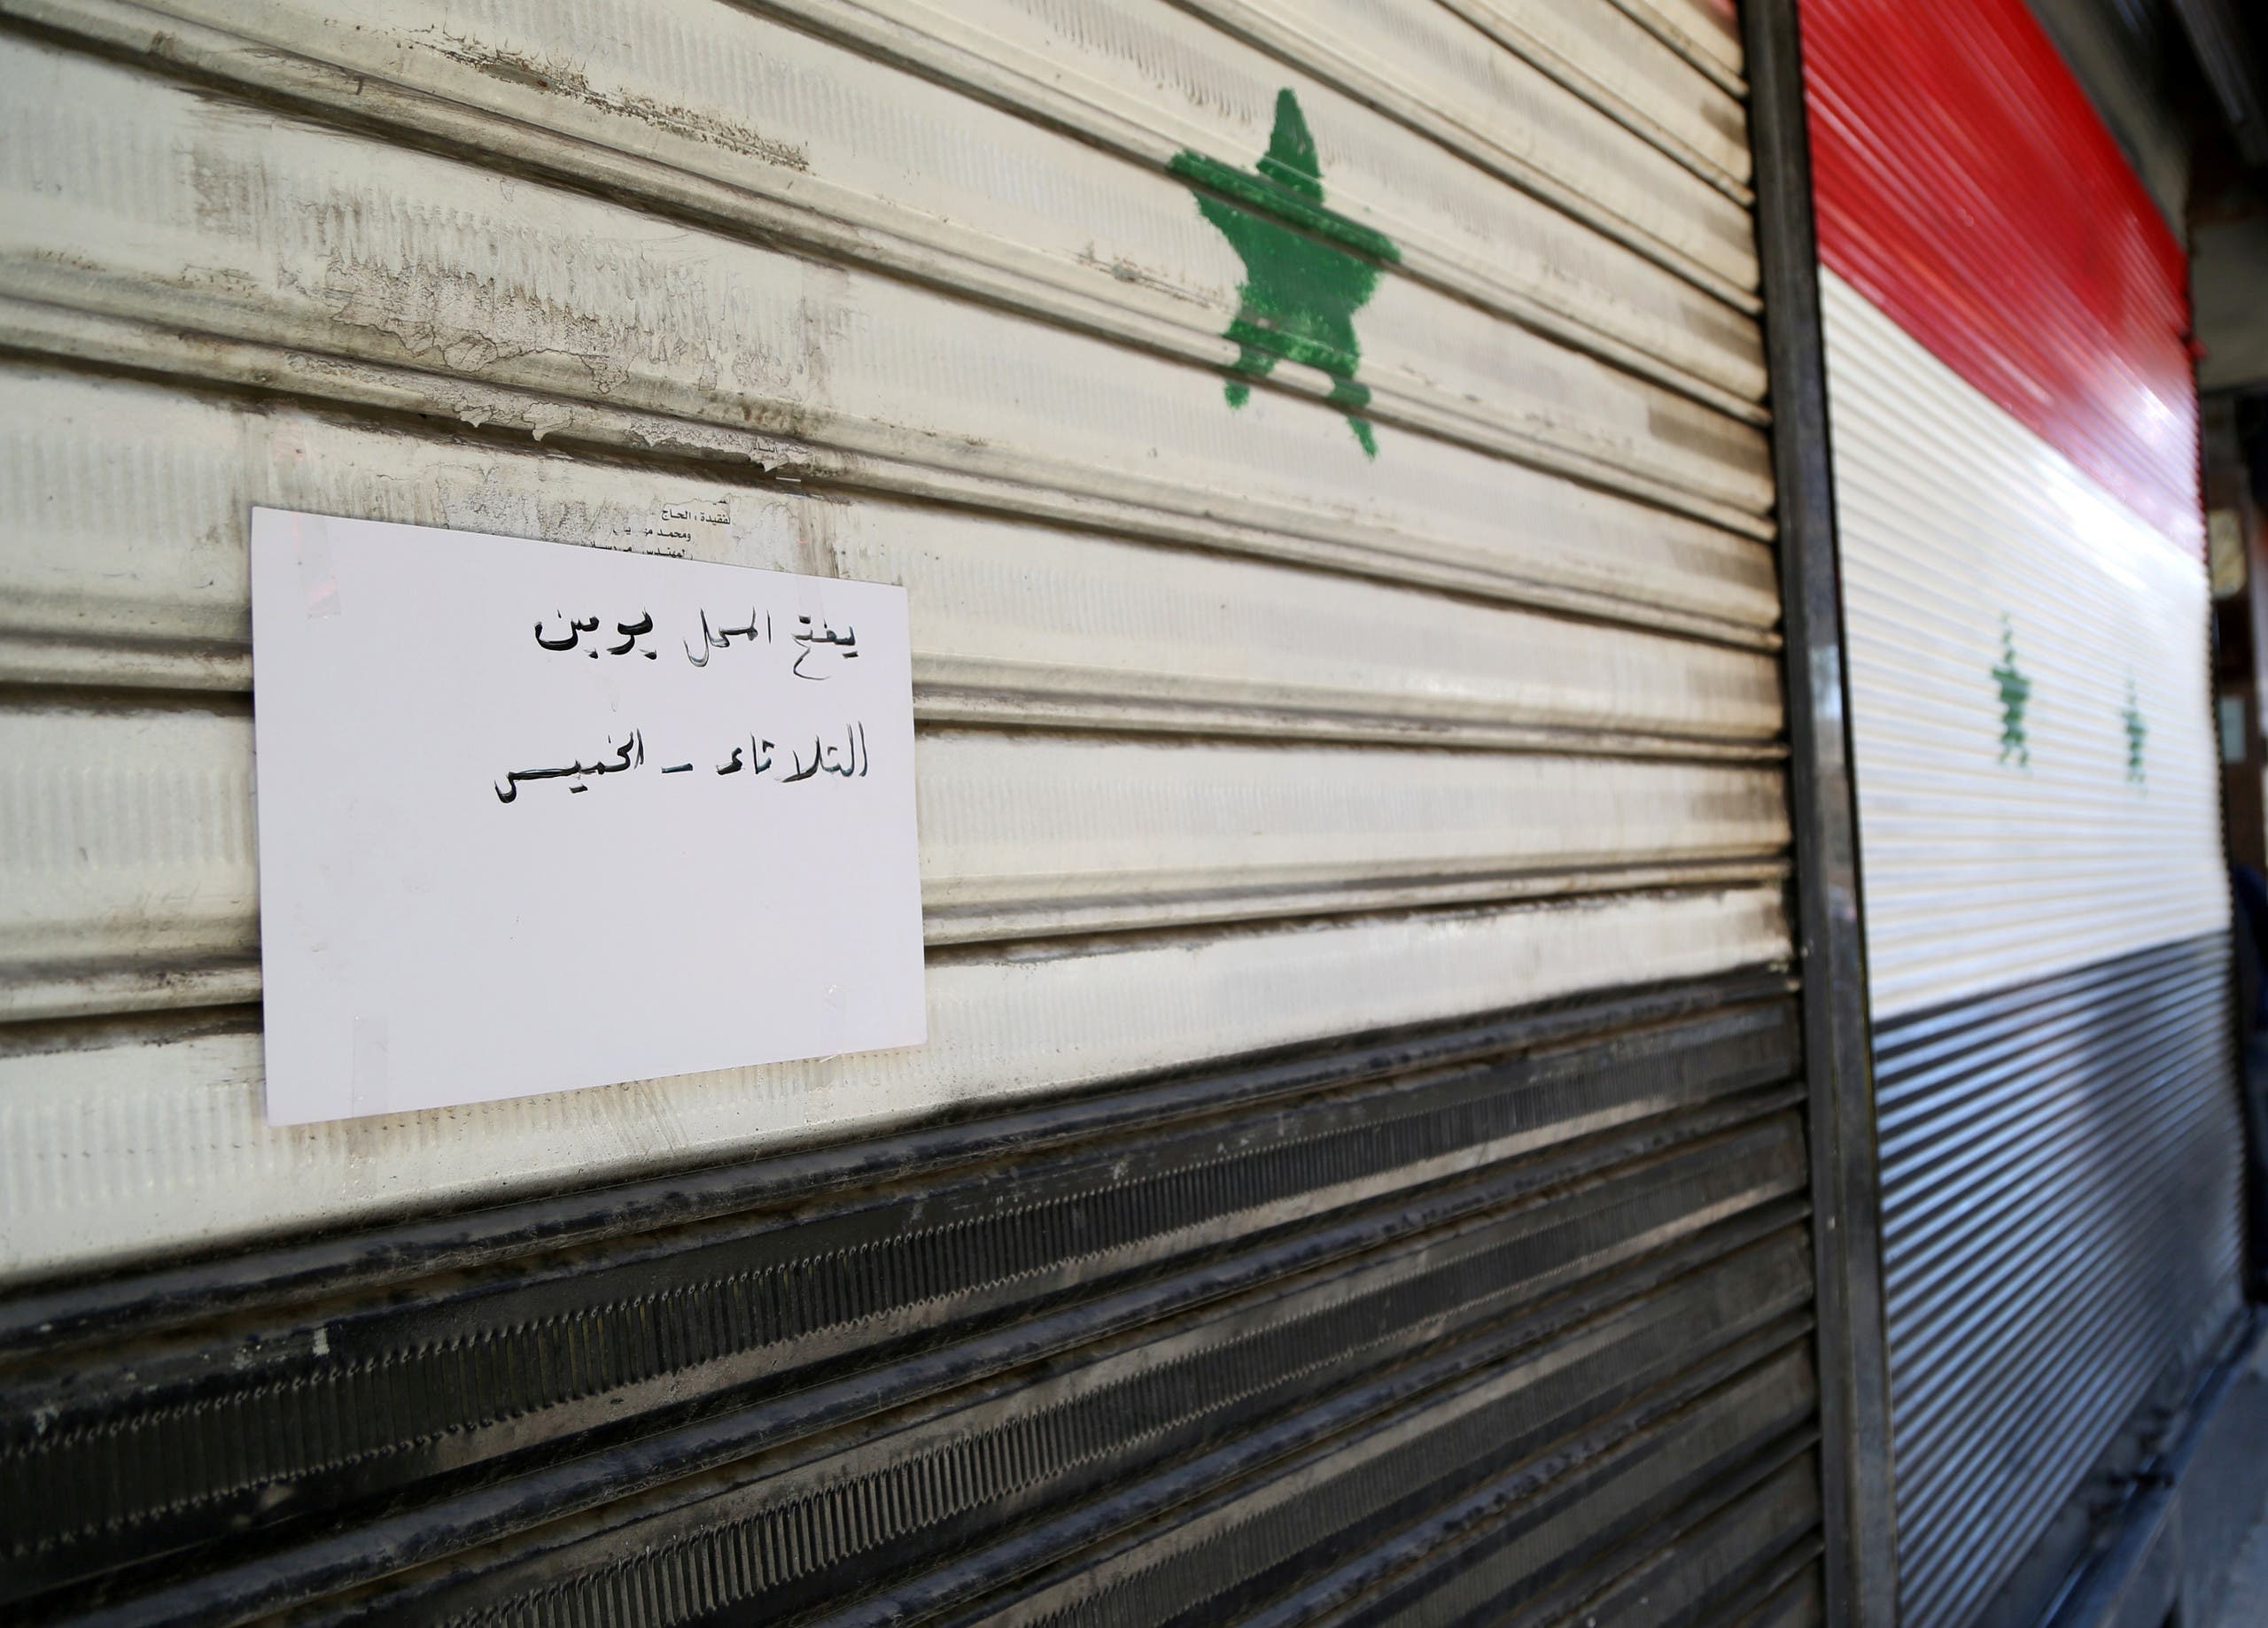 أحد المحلات في دمشق (رويترز)